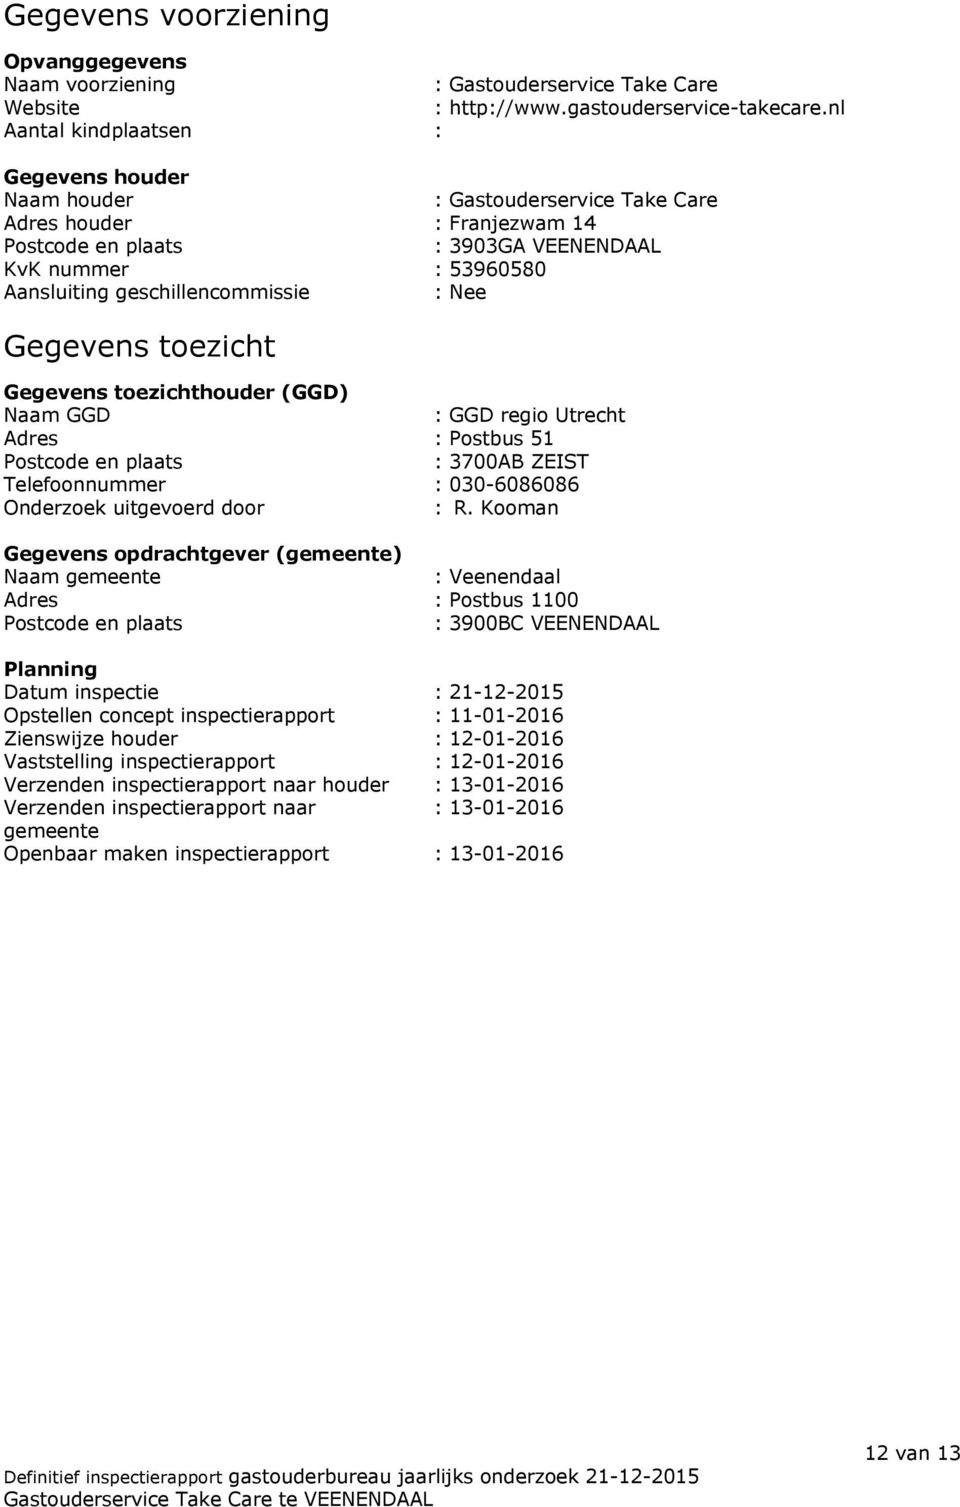 geschillencommissie : Nee Gegevens toezicht Gegevens toezichthouder (GGD) Naam GGD : GGD regio Utrecht Adres : Postbus 51 Postcode en plaats : 3700AB ZEIST Telefoonnummer : 030-6086086 Onderzoek